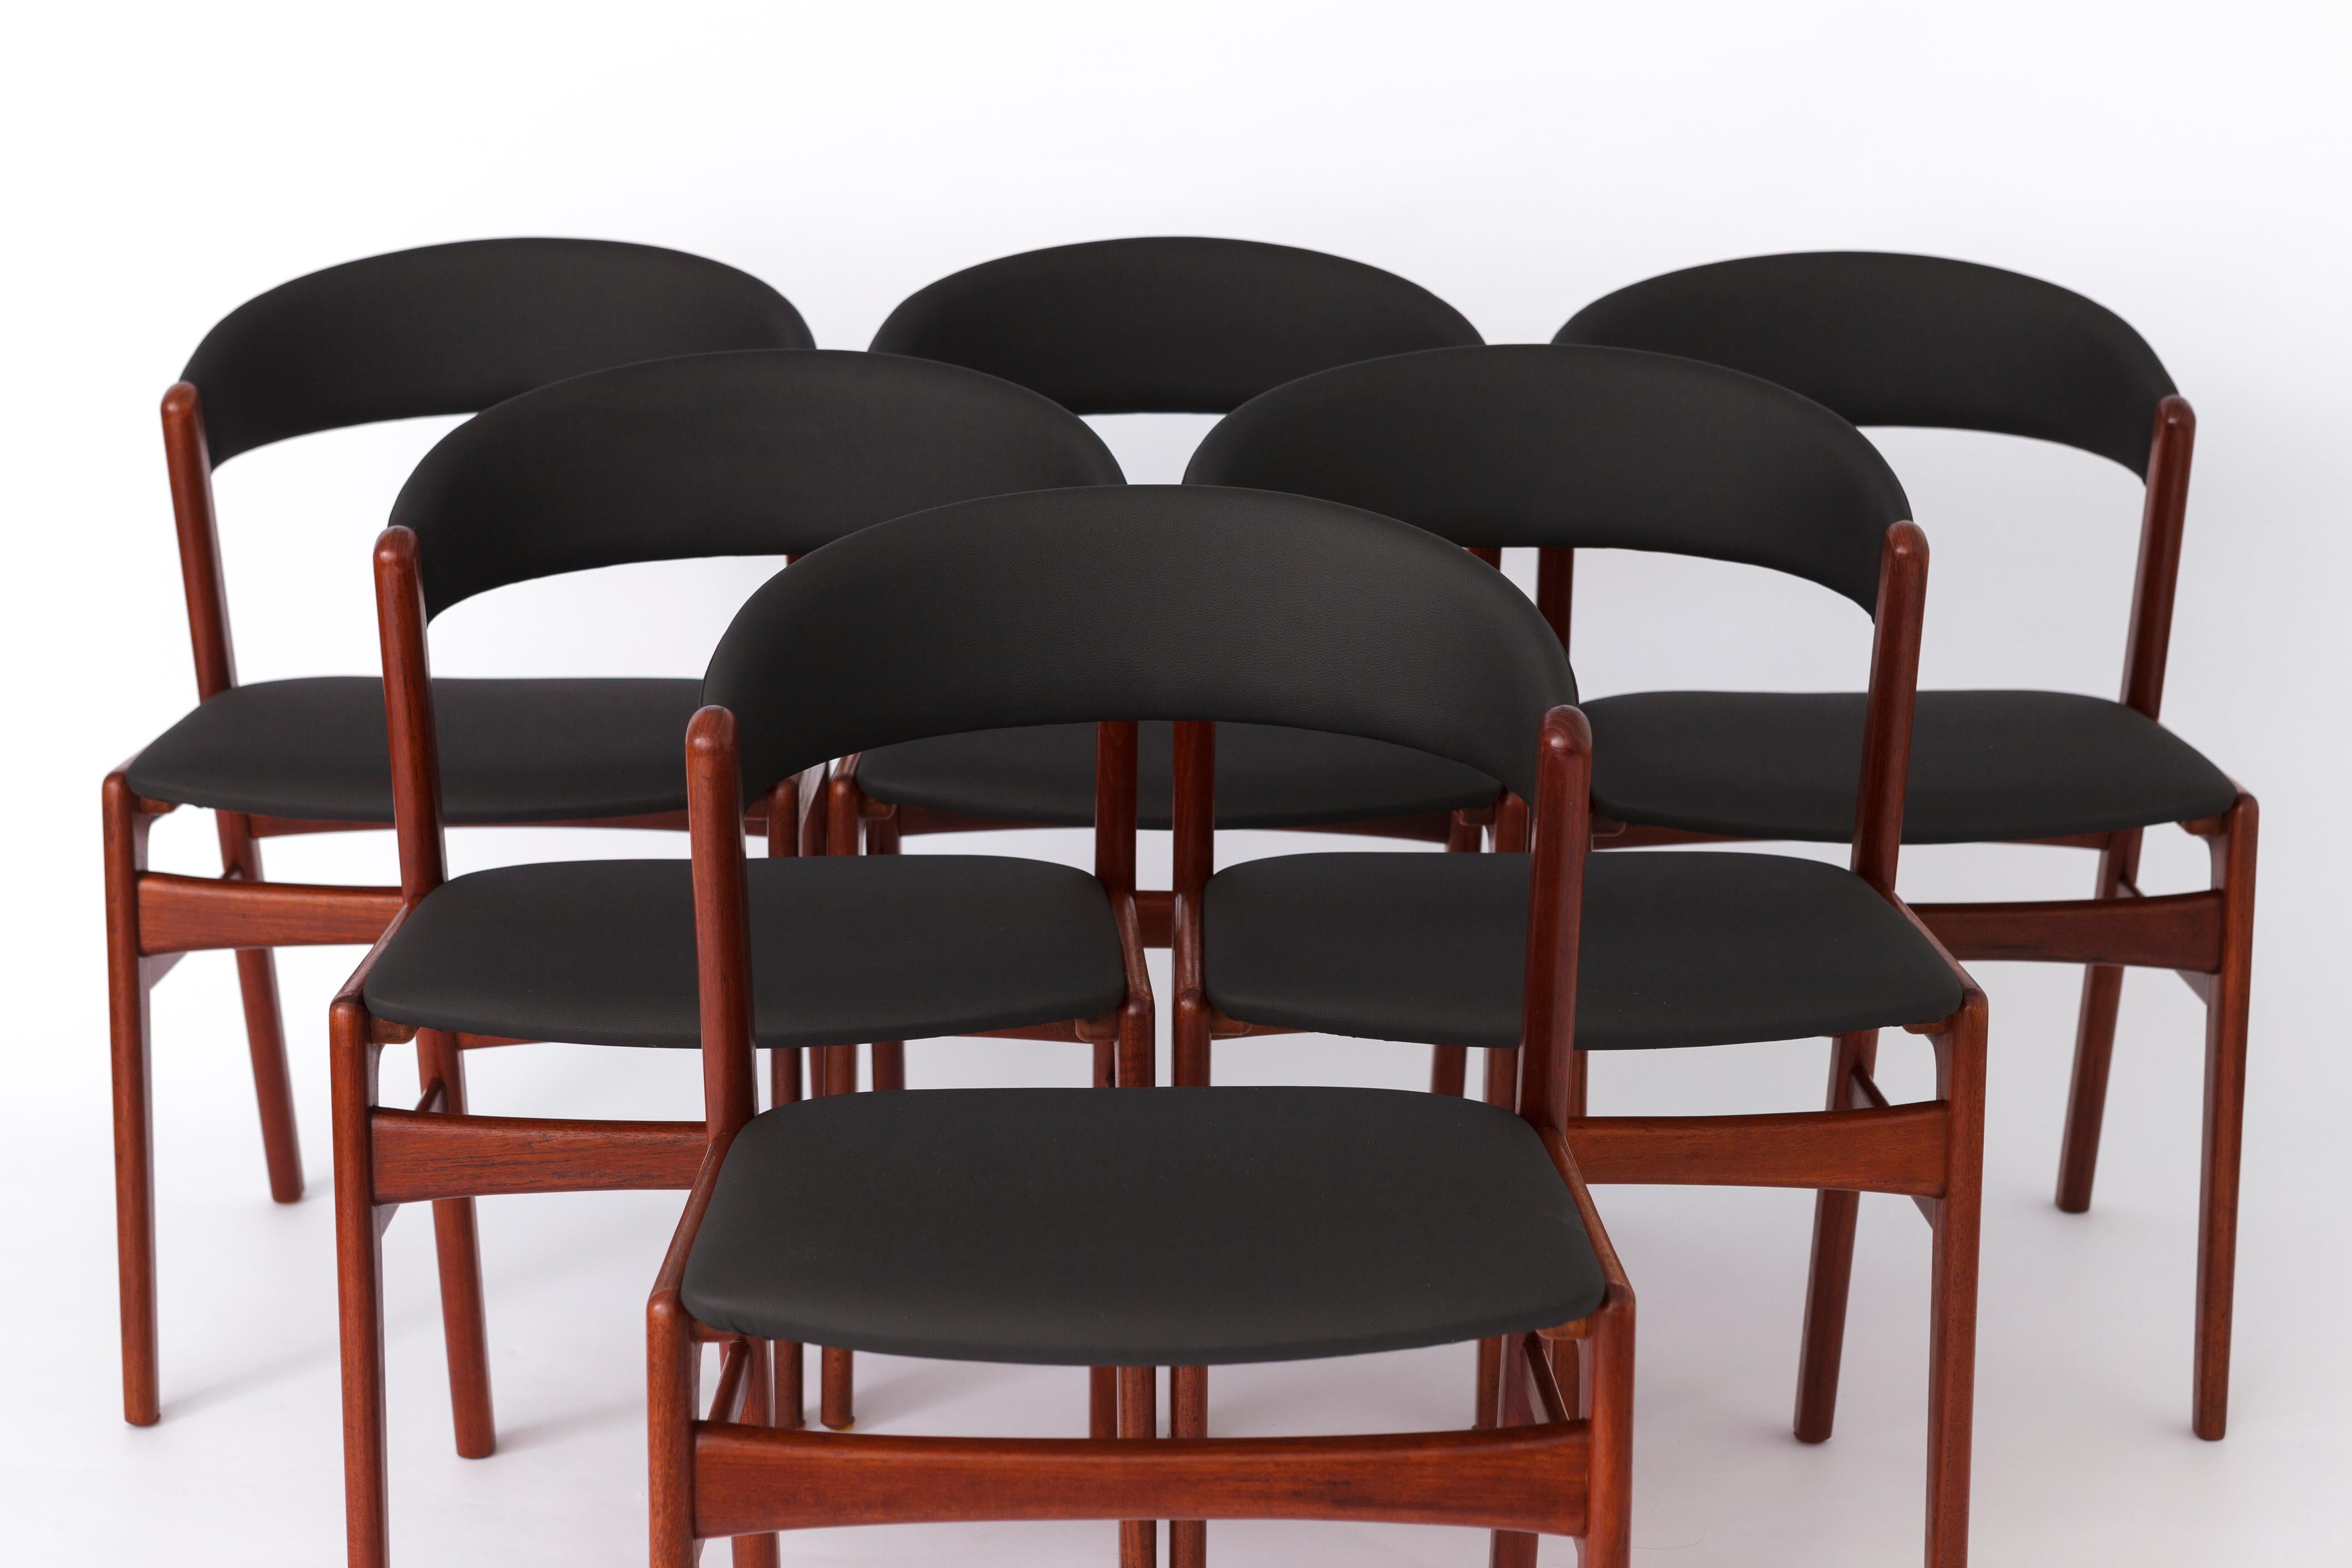 Ensemble de 6 chaises de salle à manger vintage fabriquées par le fabricant DUX, Suède dans les années 1960. 
Nom du modèle : Ribbon Back, en raison de la forme caractéristique du dossier, qui rappelle un ruban. 
Le prix affiché est celui d'un lot